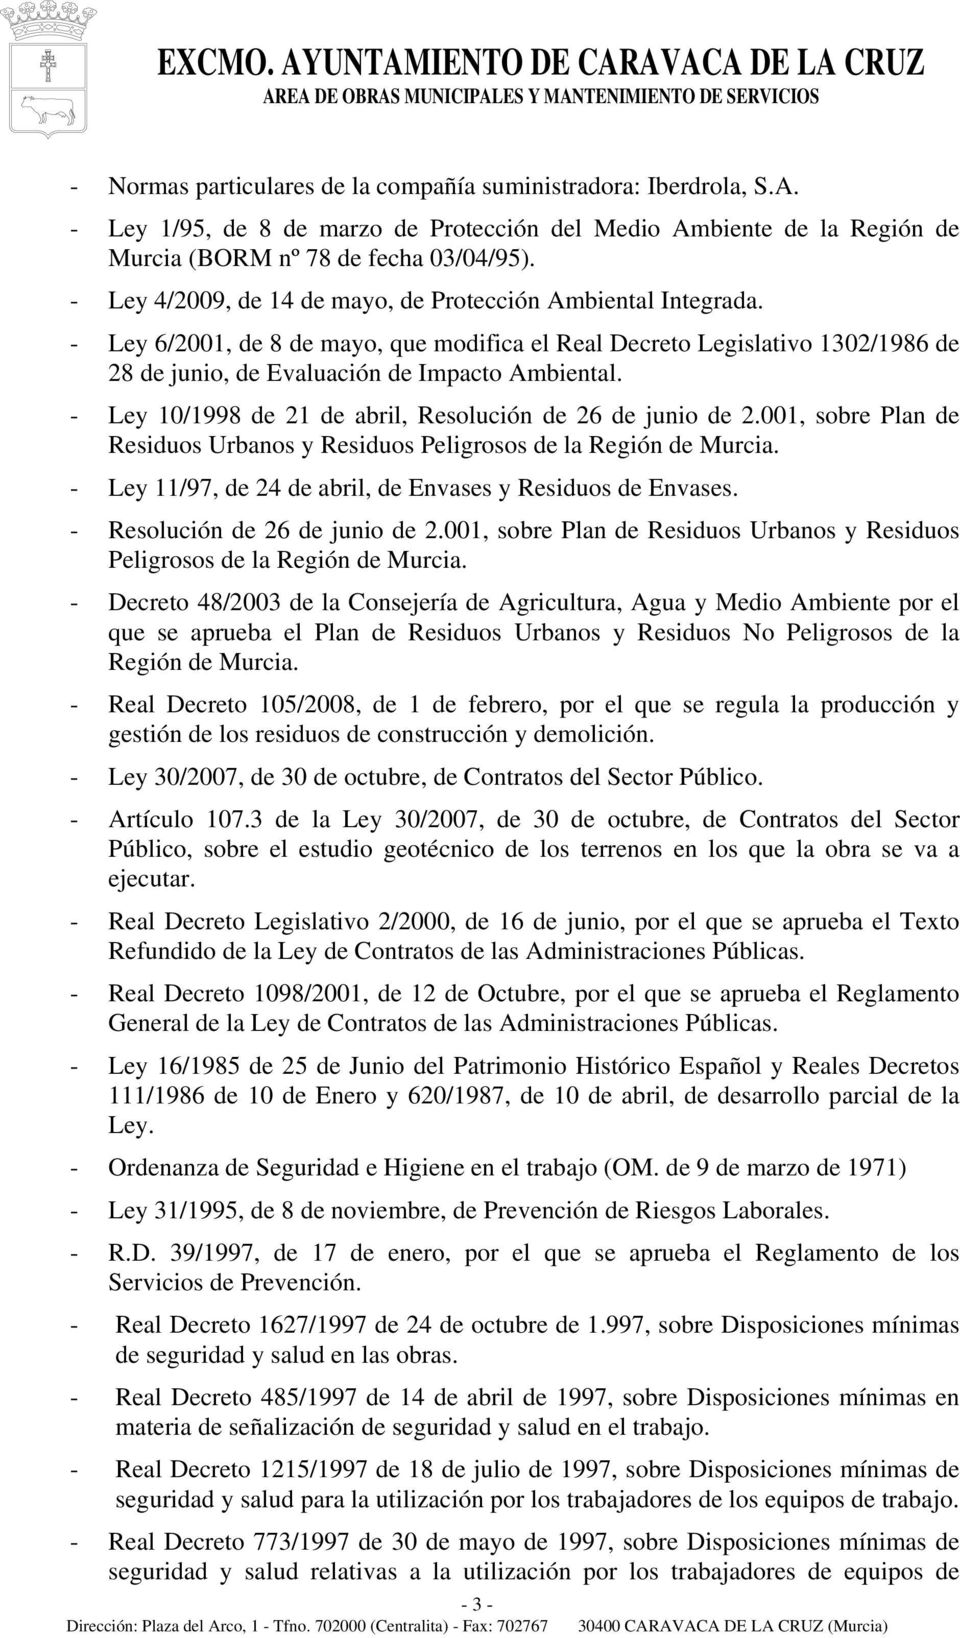 - Ley 10/1998 de 21 de abril, Resolución de 26 de junio de 2.001, sobre Plan de Residuos Urbanos y Residuos Peligrosos de la Región de Murcia.